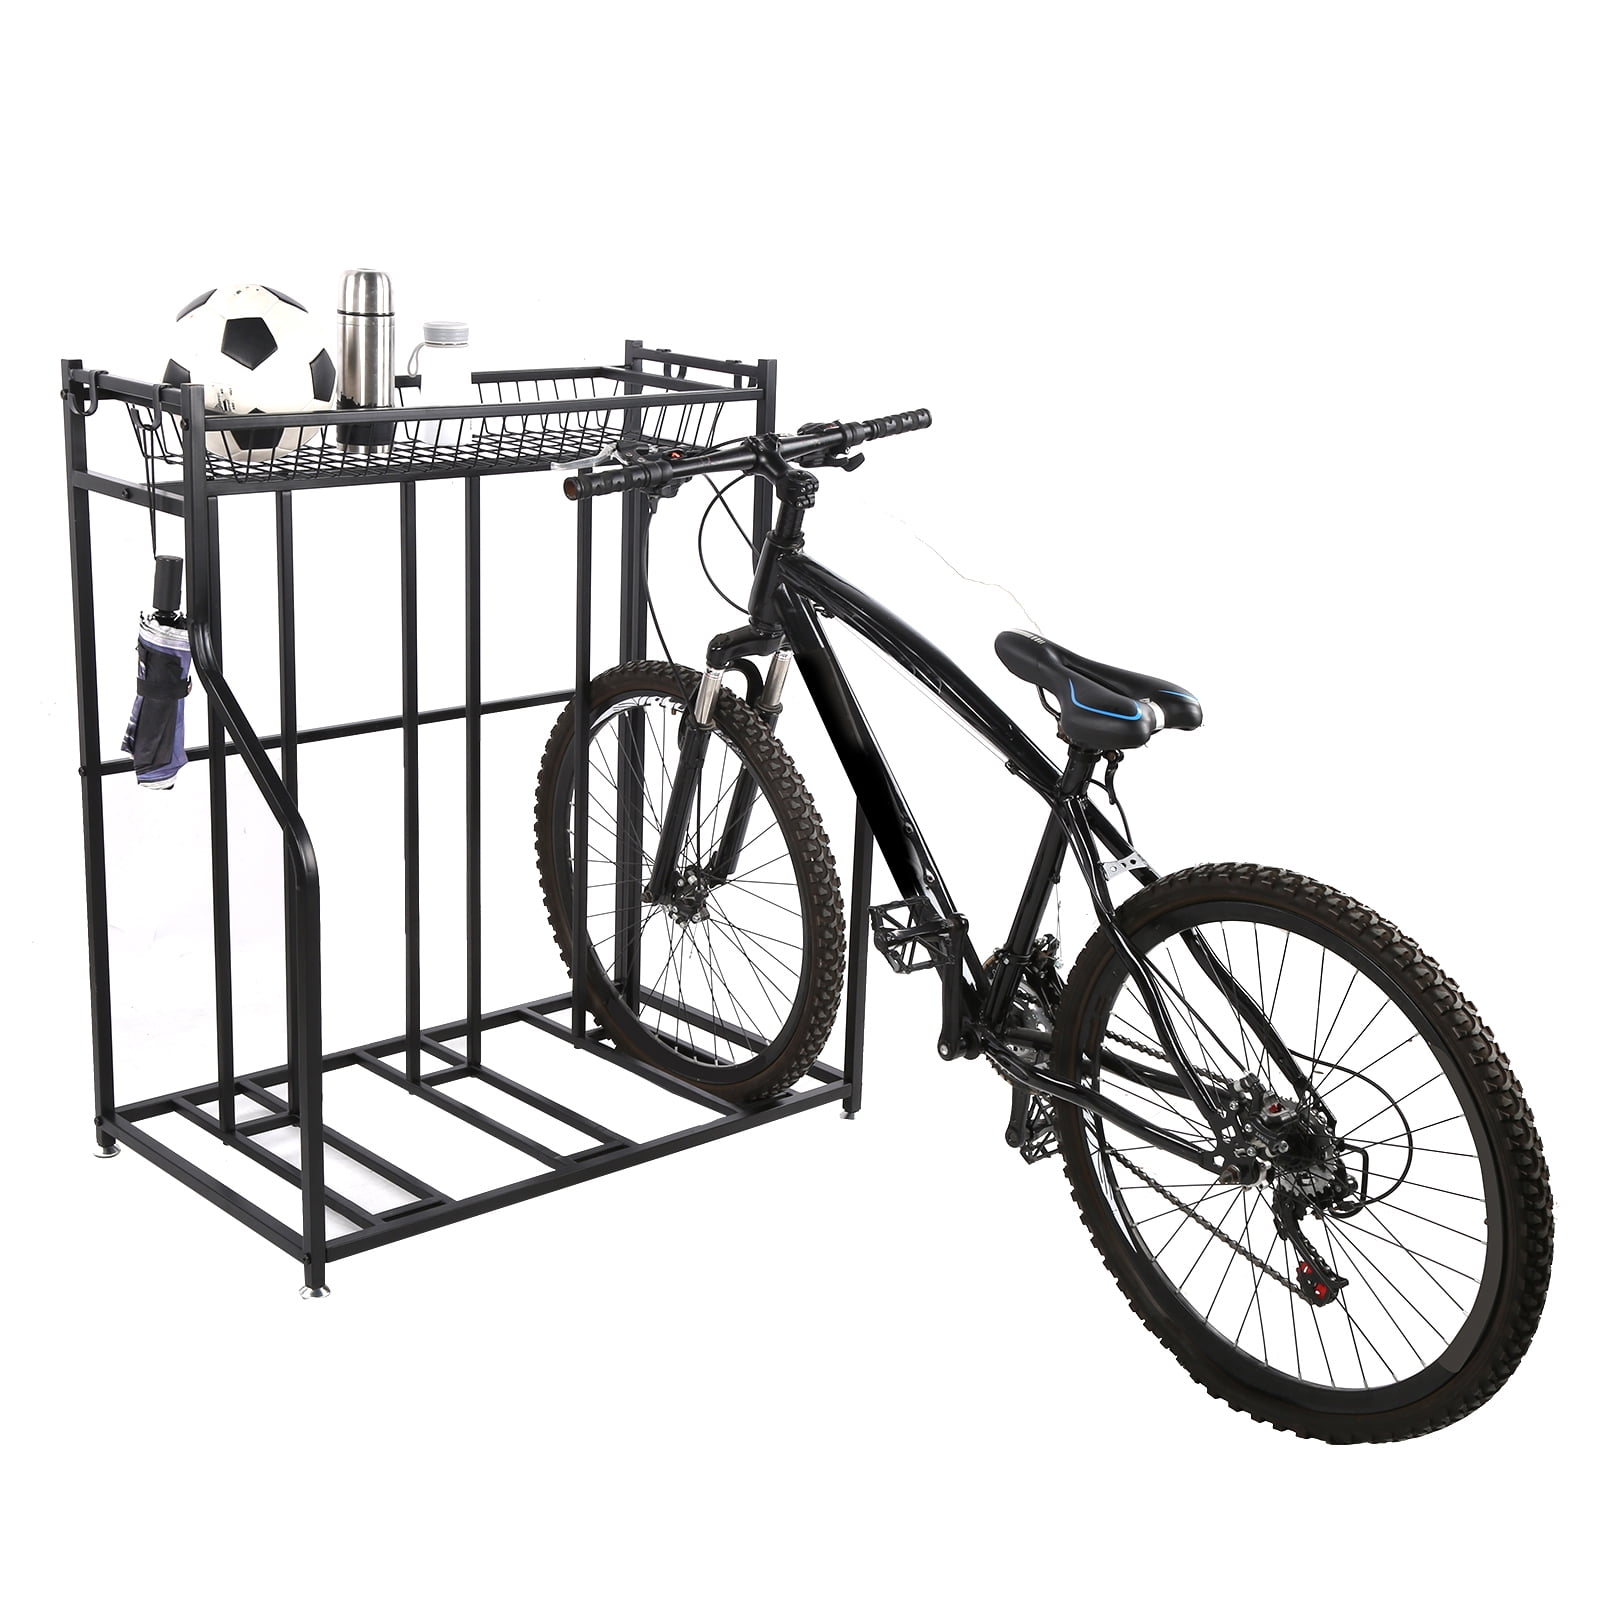 Details about   Indoor Bike Storage Rack Bicycle Floor Parking Stand Bicycle Repair Rack 